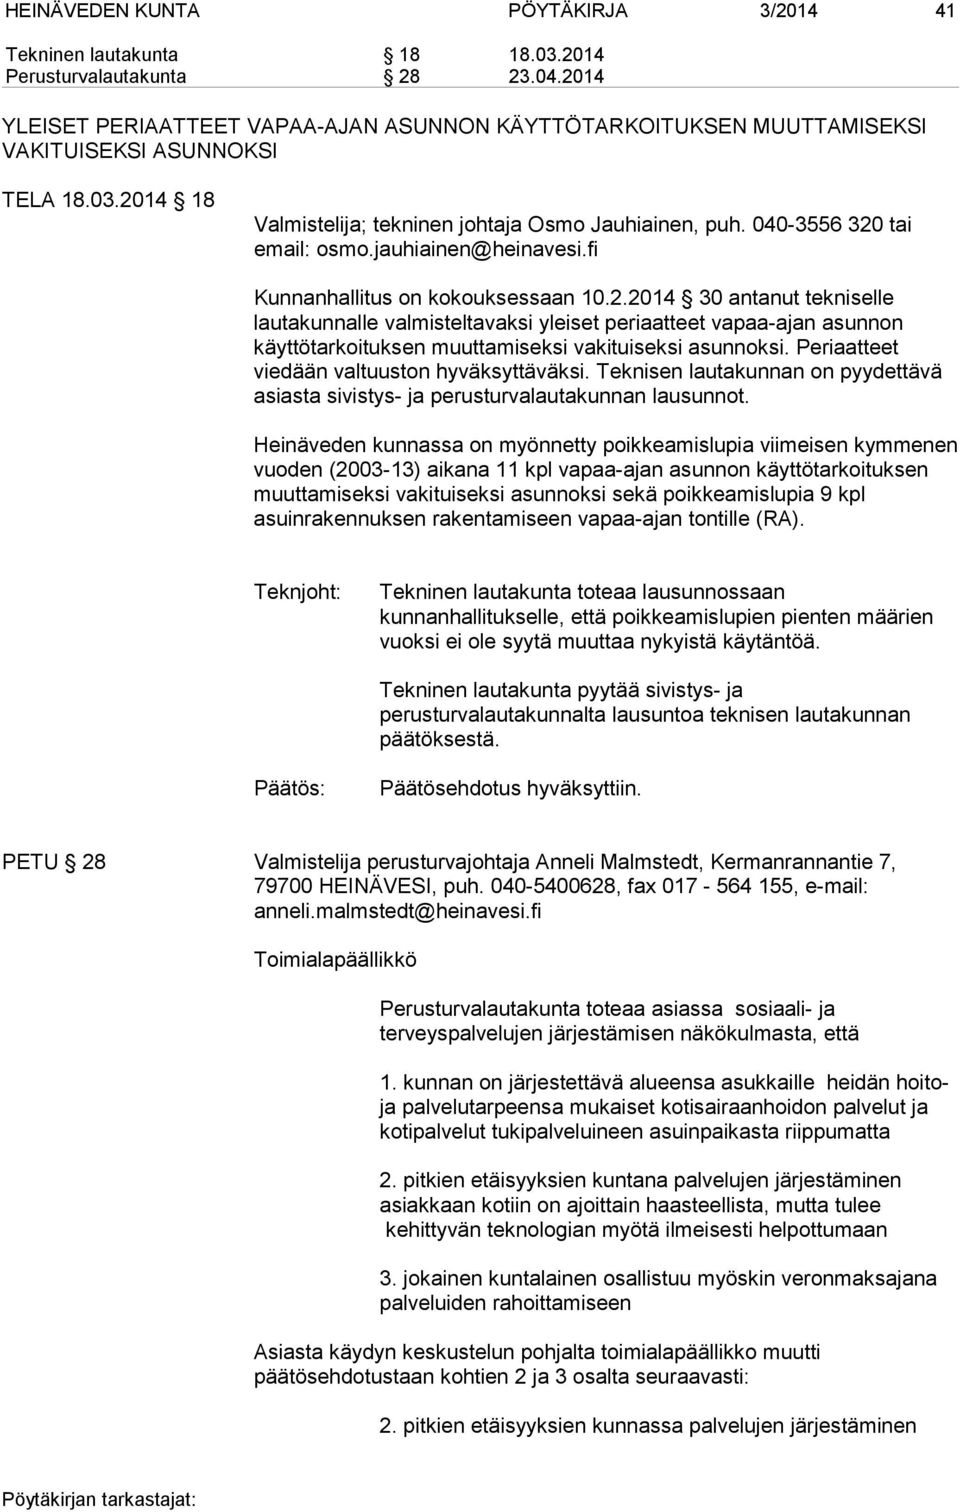 040-3556 320 tai email: osmo.jauhiainen@heinavesi.fi Kunnanhallitus on kokouksessaan 10.2.2014 30 antanut tekniselle lautakunnalle valmisteltavaksi yleiset periaatteet vapaa-ajan asunnon käyttötarkoituksen muuttamiseksi vakituiseksi asunnoksi.